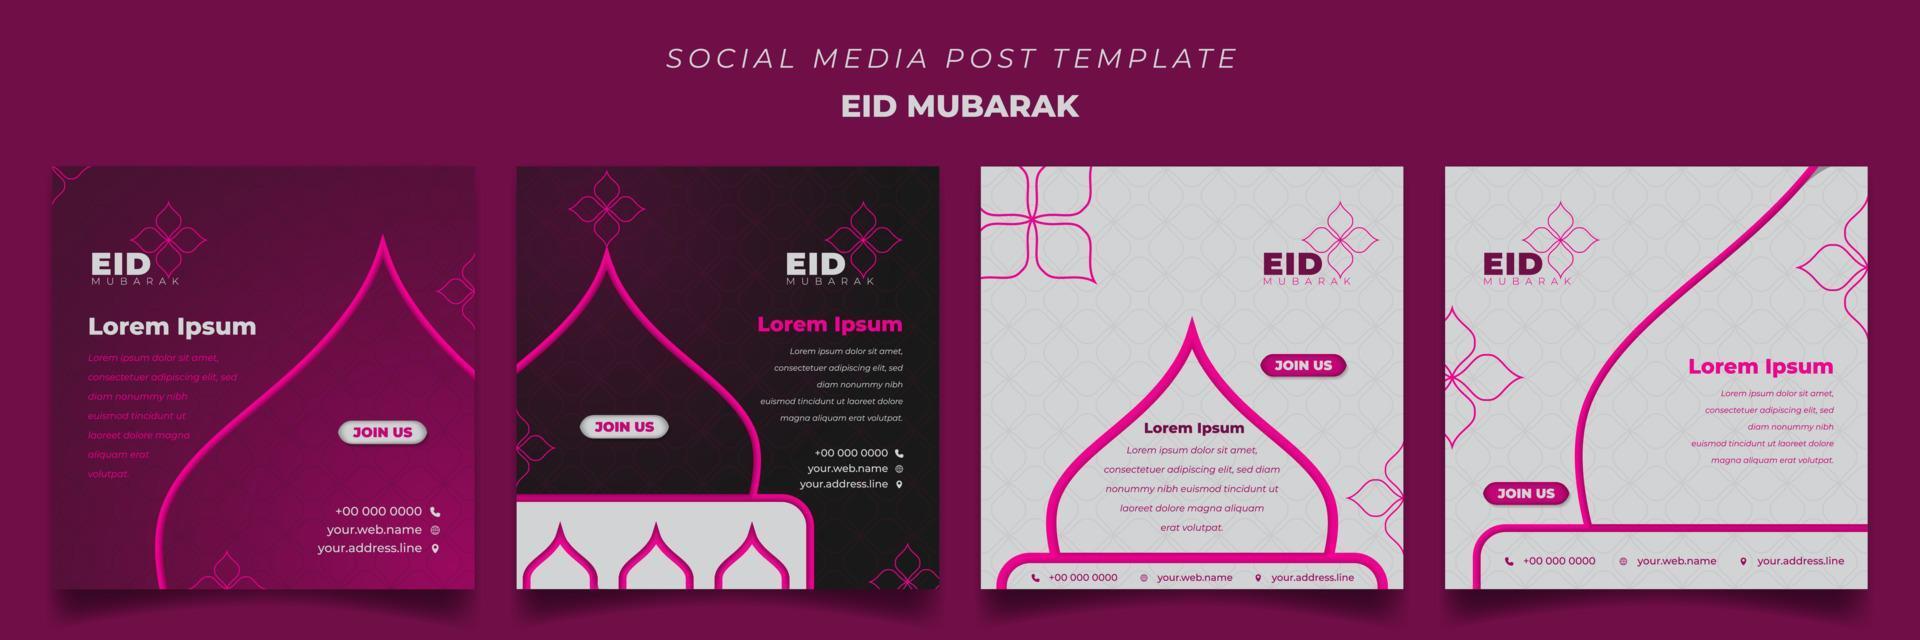 satz von social-media-beitragsvorlagen im quadratischen hintergrund mit femininem design für eid mubarak vektor